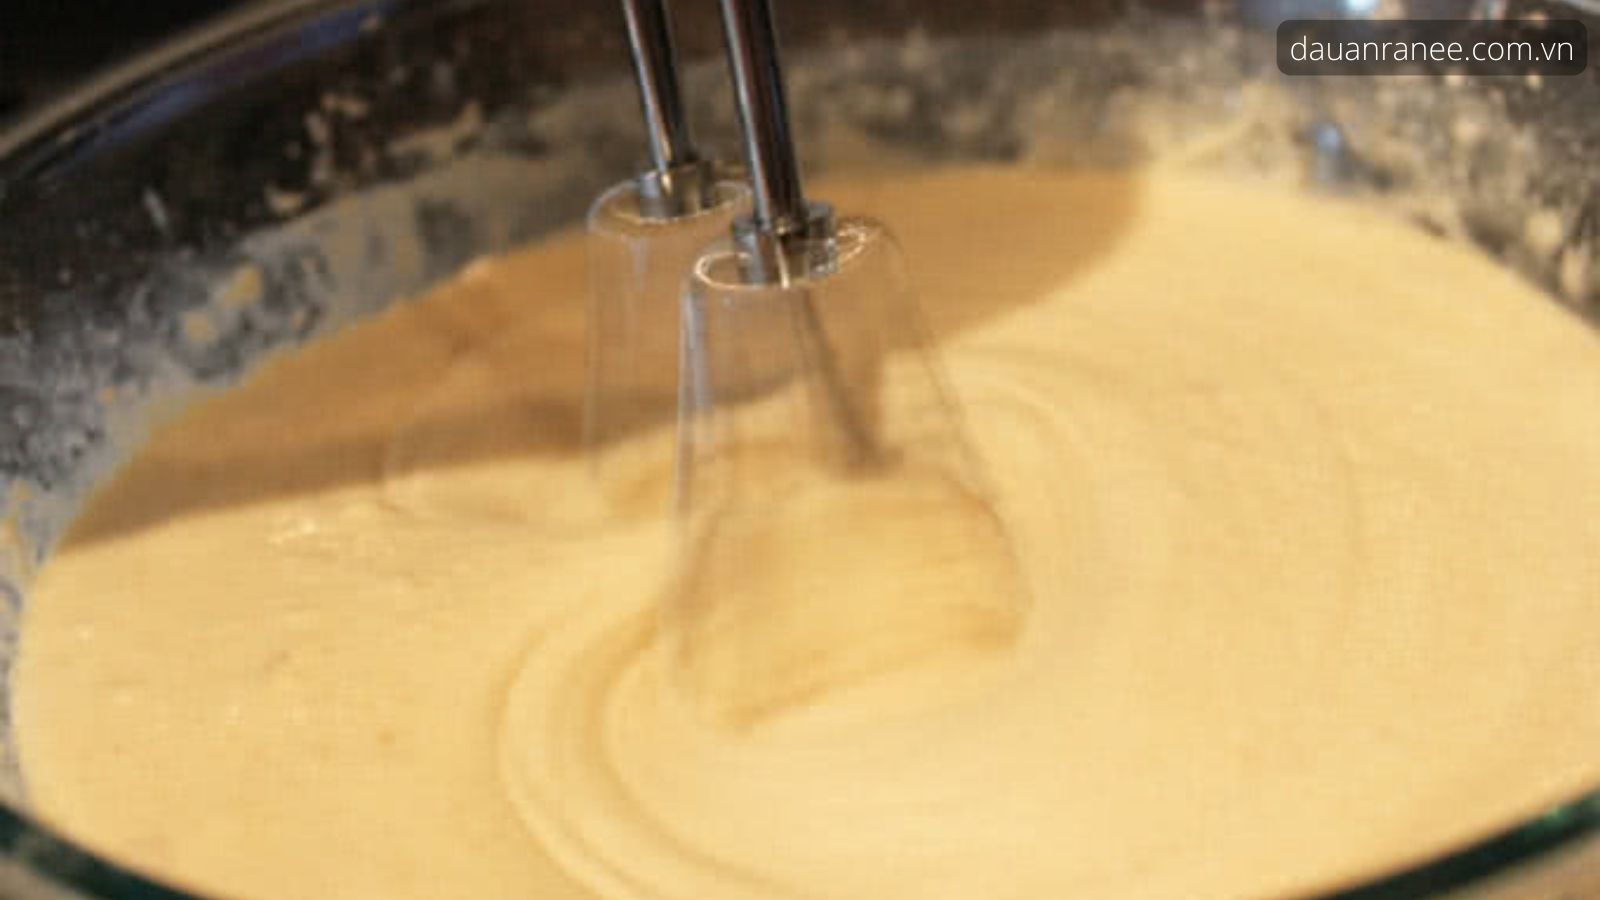 Chuẩn bị hỗn hợp món bánh custard đơn giản và ngon bất bại - Cách làm caramen